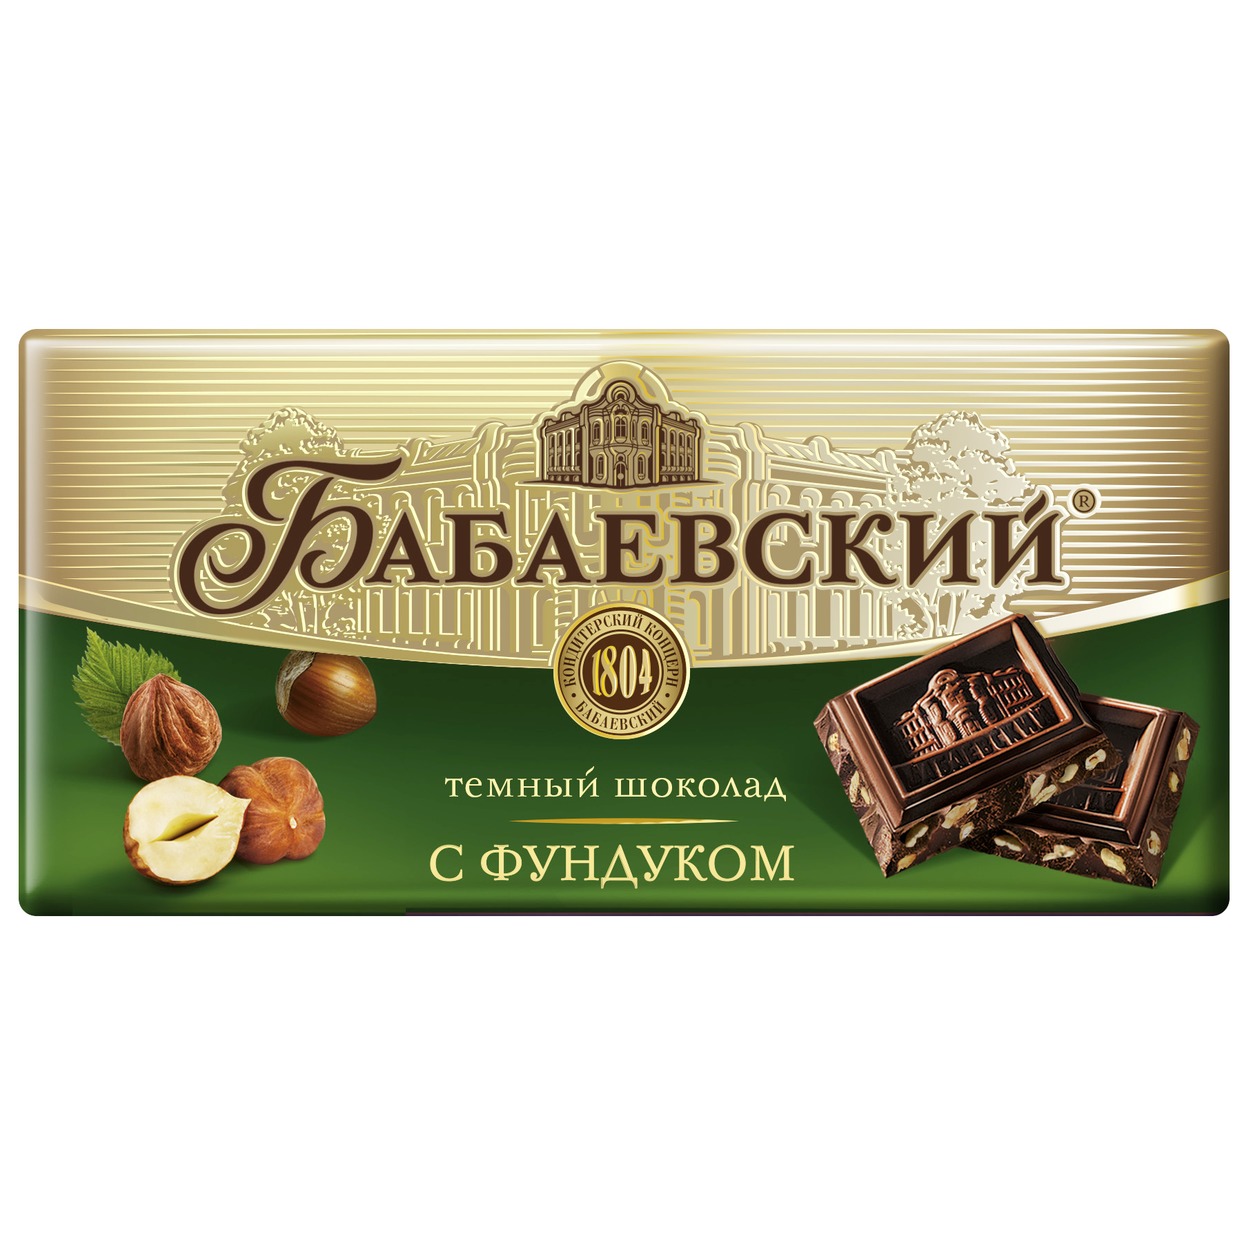 Шоколад Бабаевский горький с фундуком 100г по акции в Пятерочке